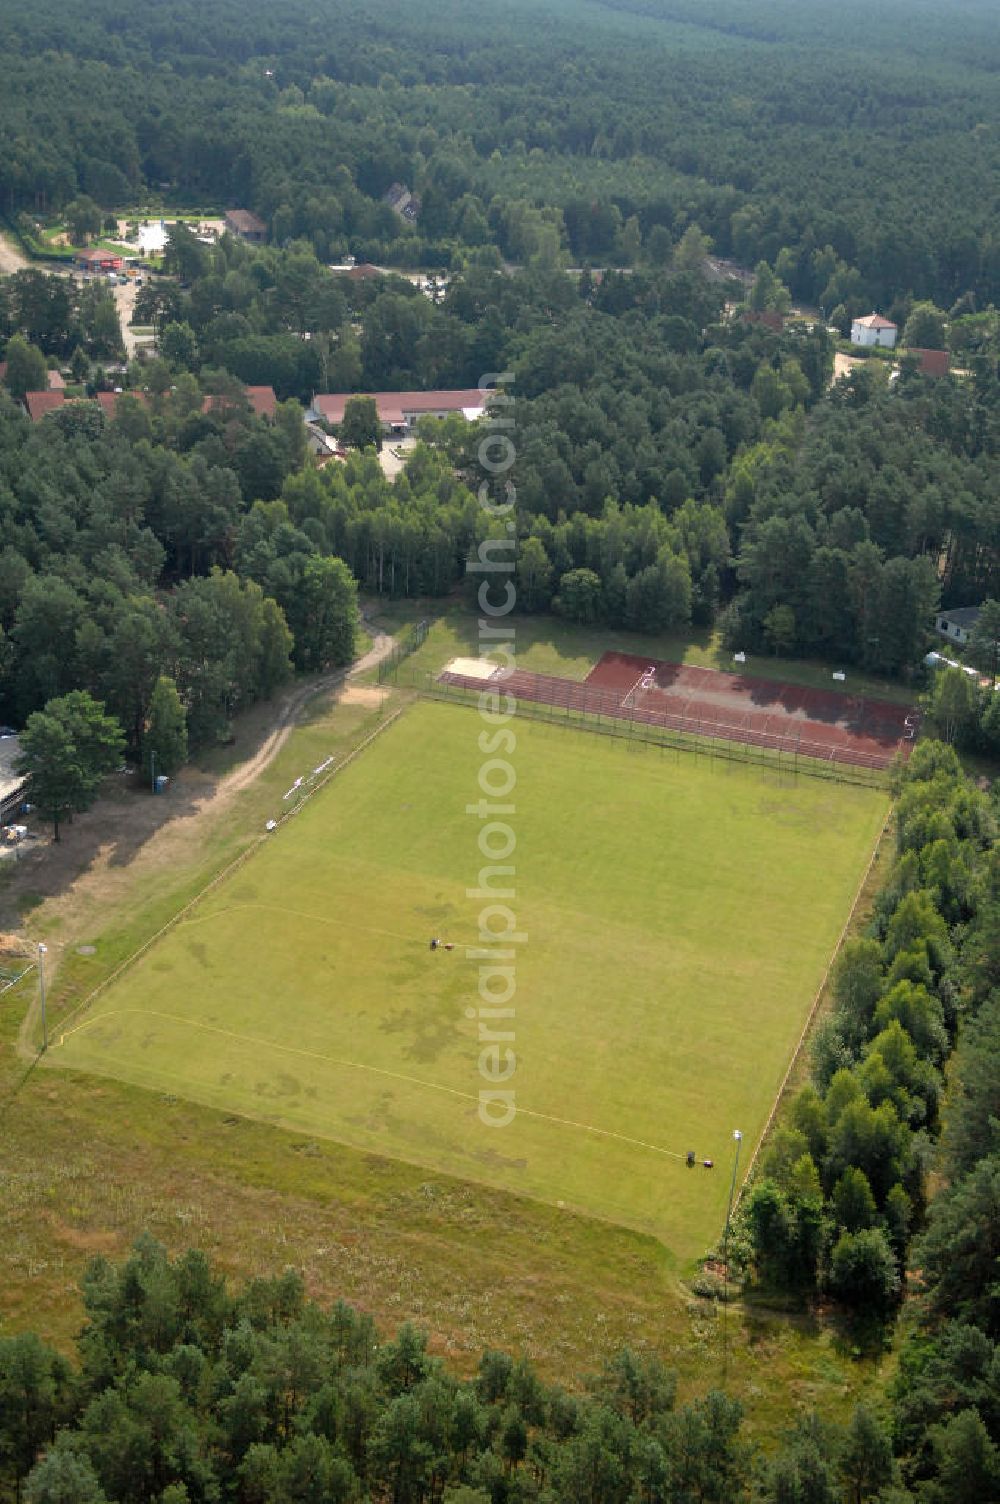 Borkheide from above - Blick auf den Sportplatz in Borkheide, auf dem mehrere Fussballmannschaften, unter an derem der Sportverein Borkheider SV ´90, spielen.